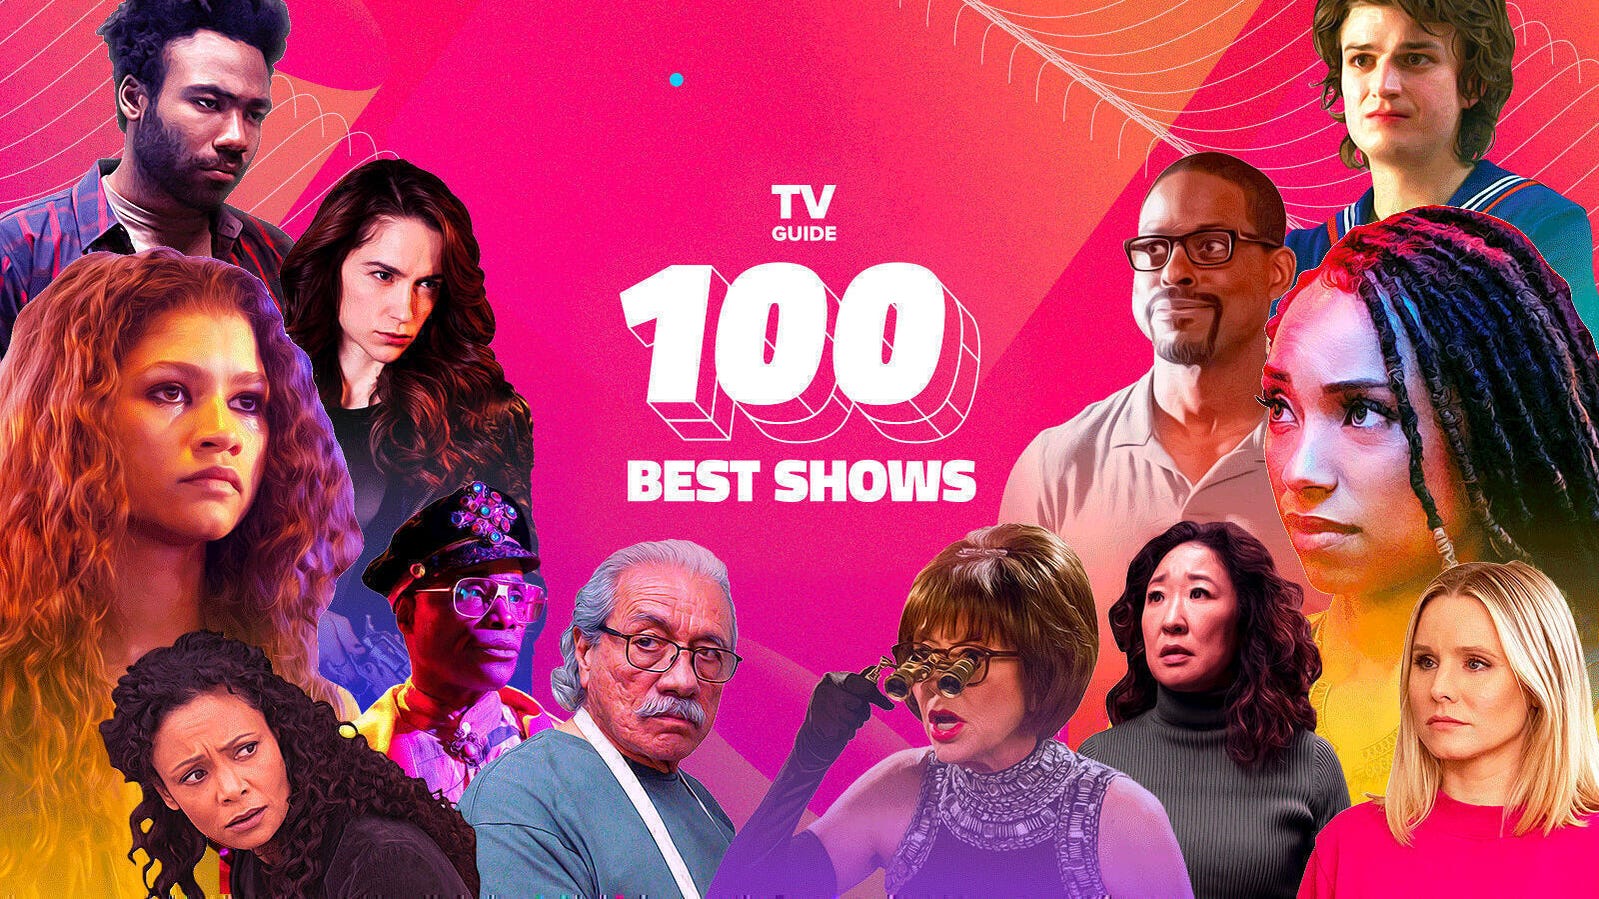 100 Best Shows 2019 ranking